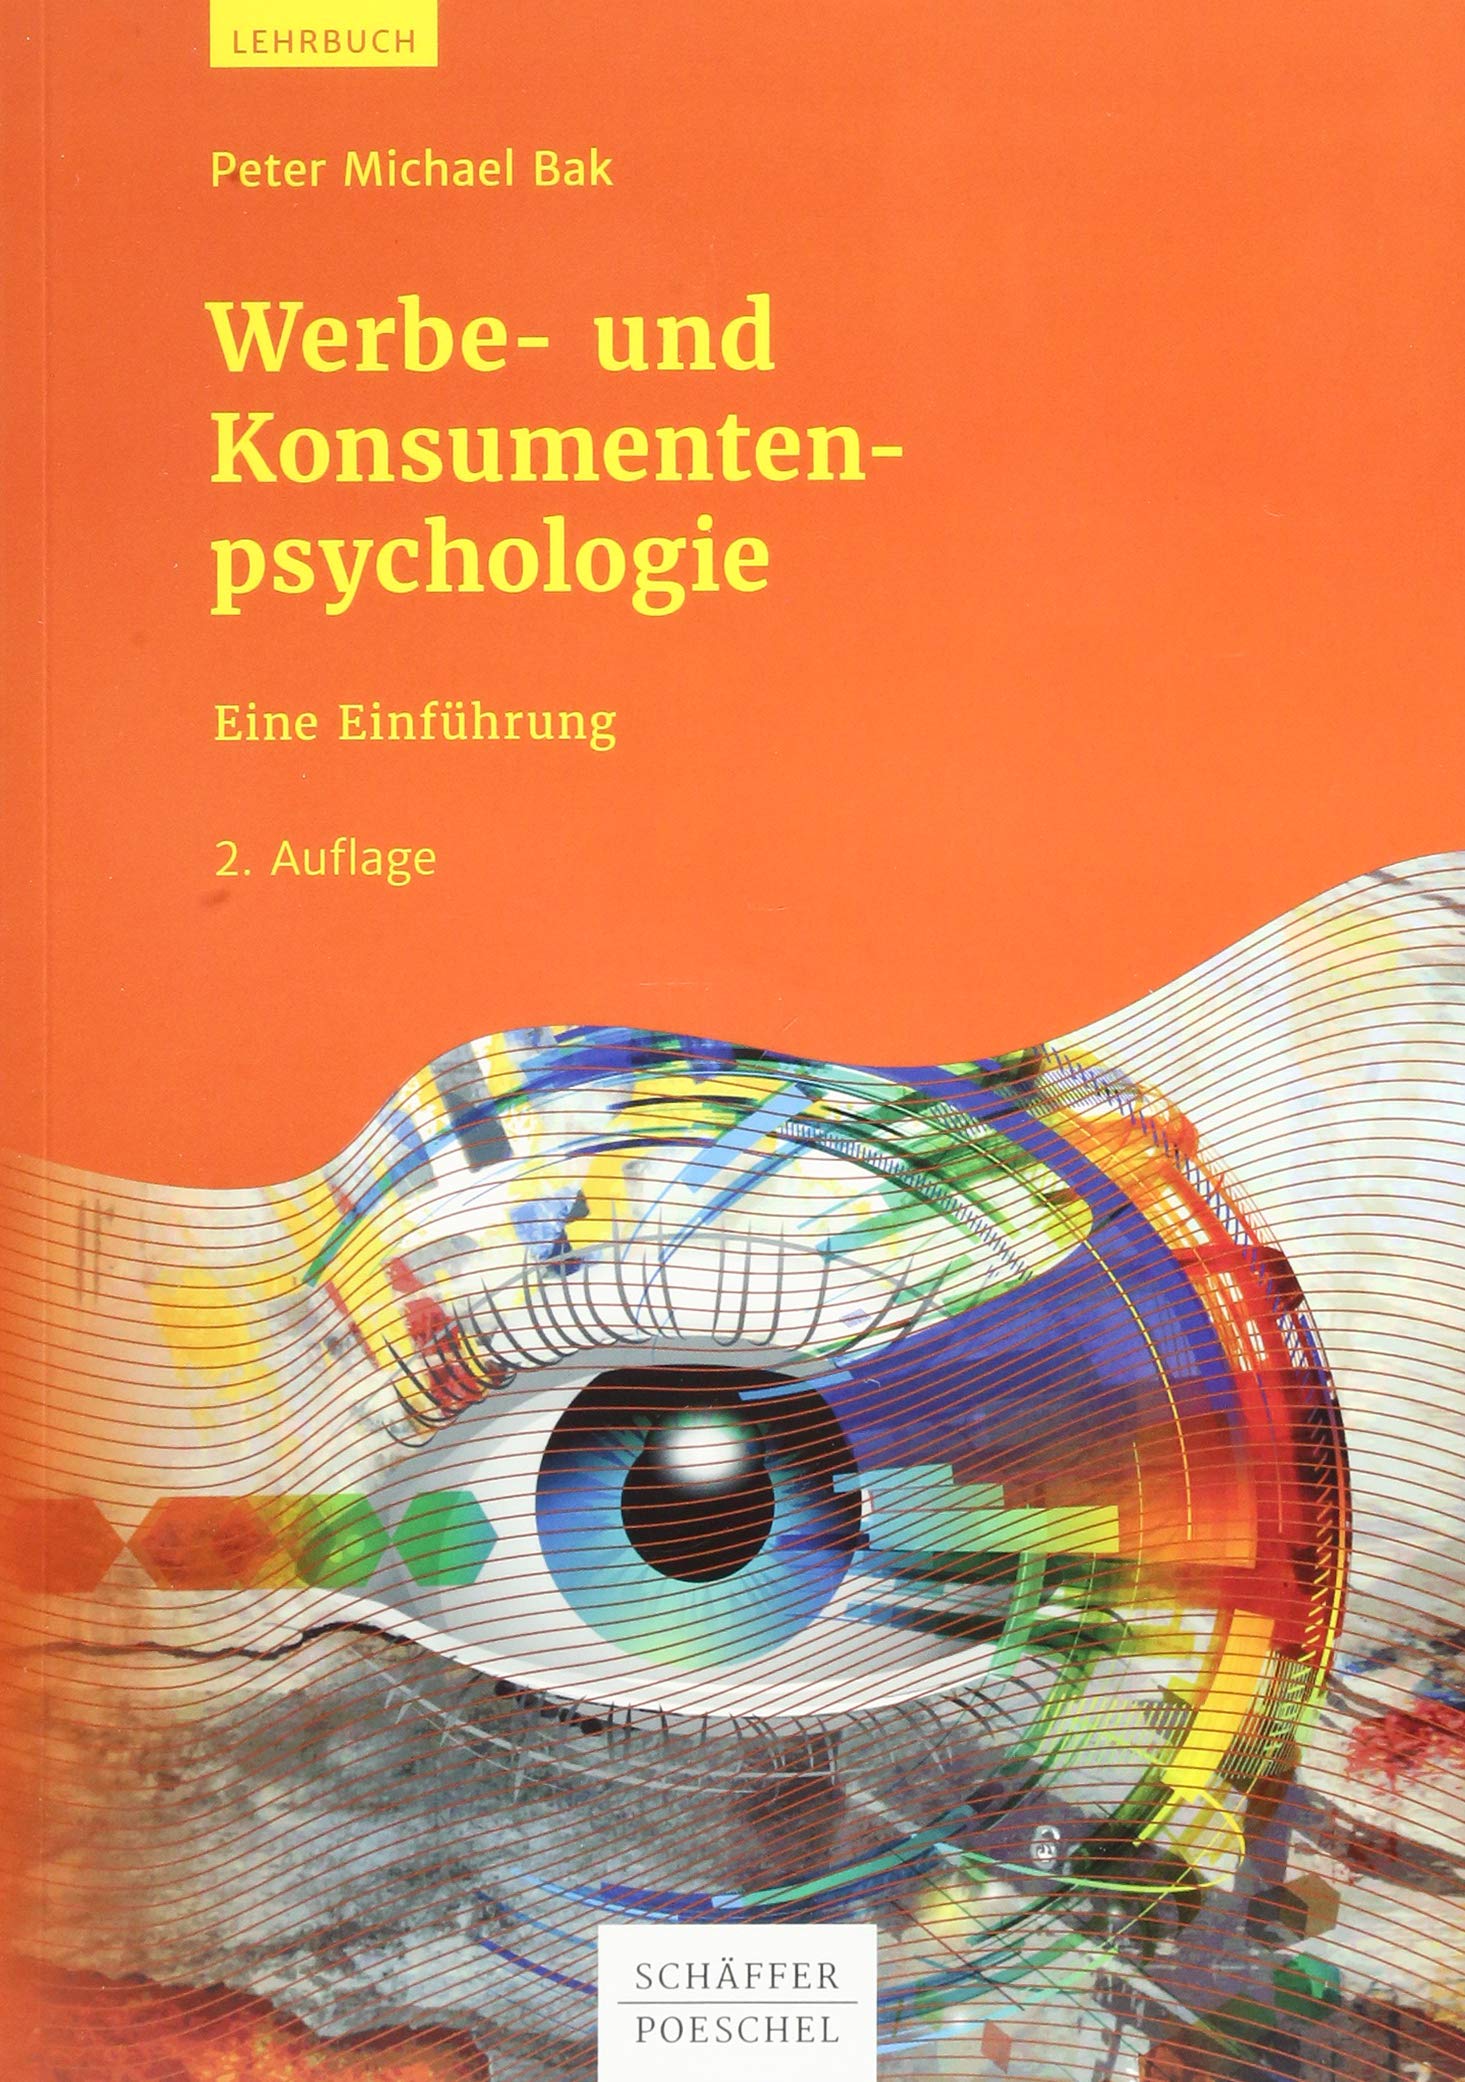 Literaturtipp: Werbe- und Konsumentenpsychologie 2.Auflage